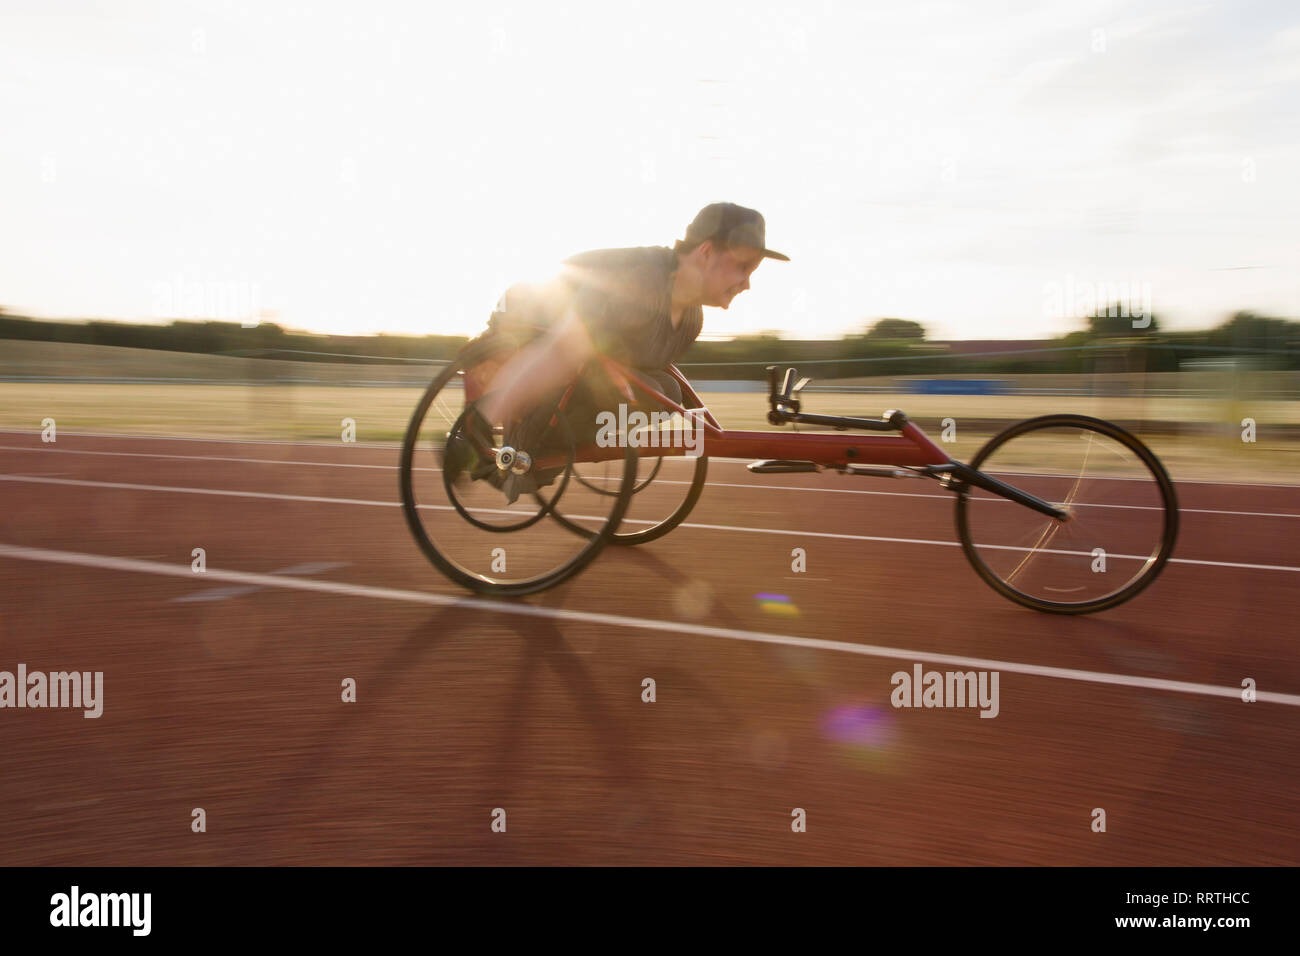 Déterminé teenage boy athlète paraplégique en accélérant le long de la piste en course en fauteuil roulant de sport Banque D'Images